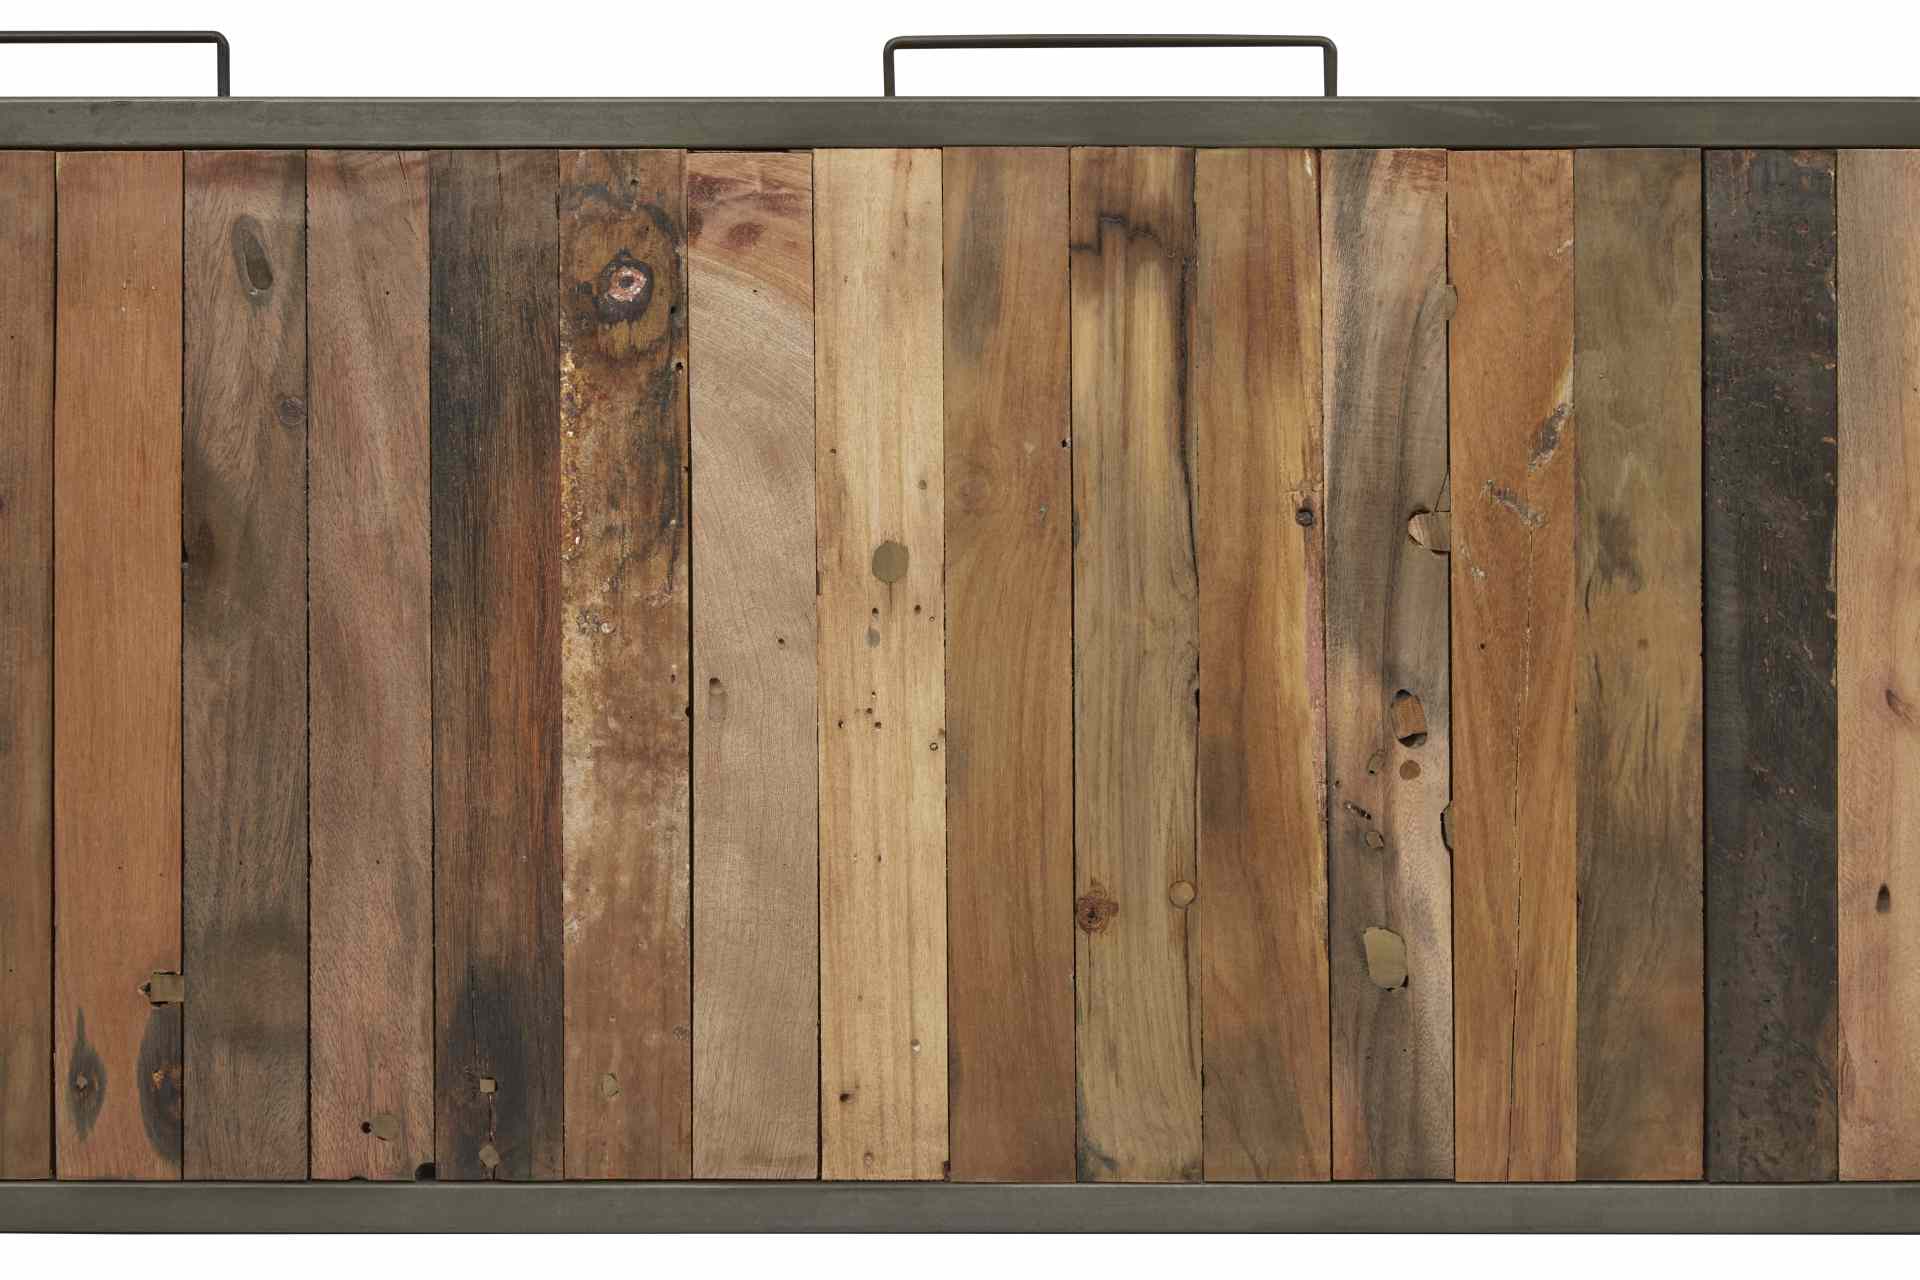 Das TV-Board Nordic überzeugt mit seinem Industriellen Design. Gefertigt wurde es aus Recyceltem Boots Holz, welches einen natürlichen Farbton besitzt. Das Gestell ist aus Metall und hat eine Anthrazit Farbe. Das TV-Board verfügt über drei Schubladen und 